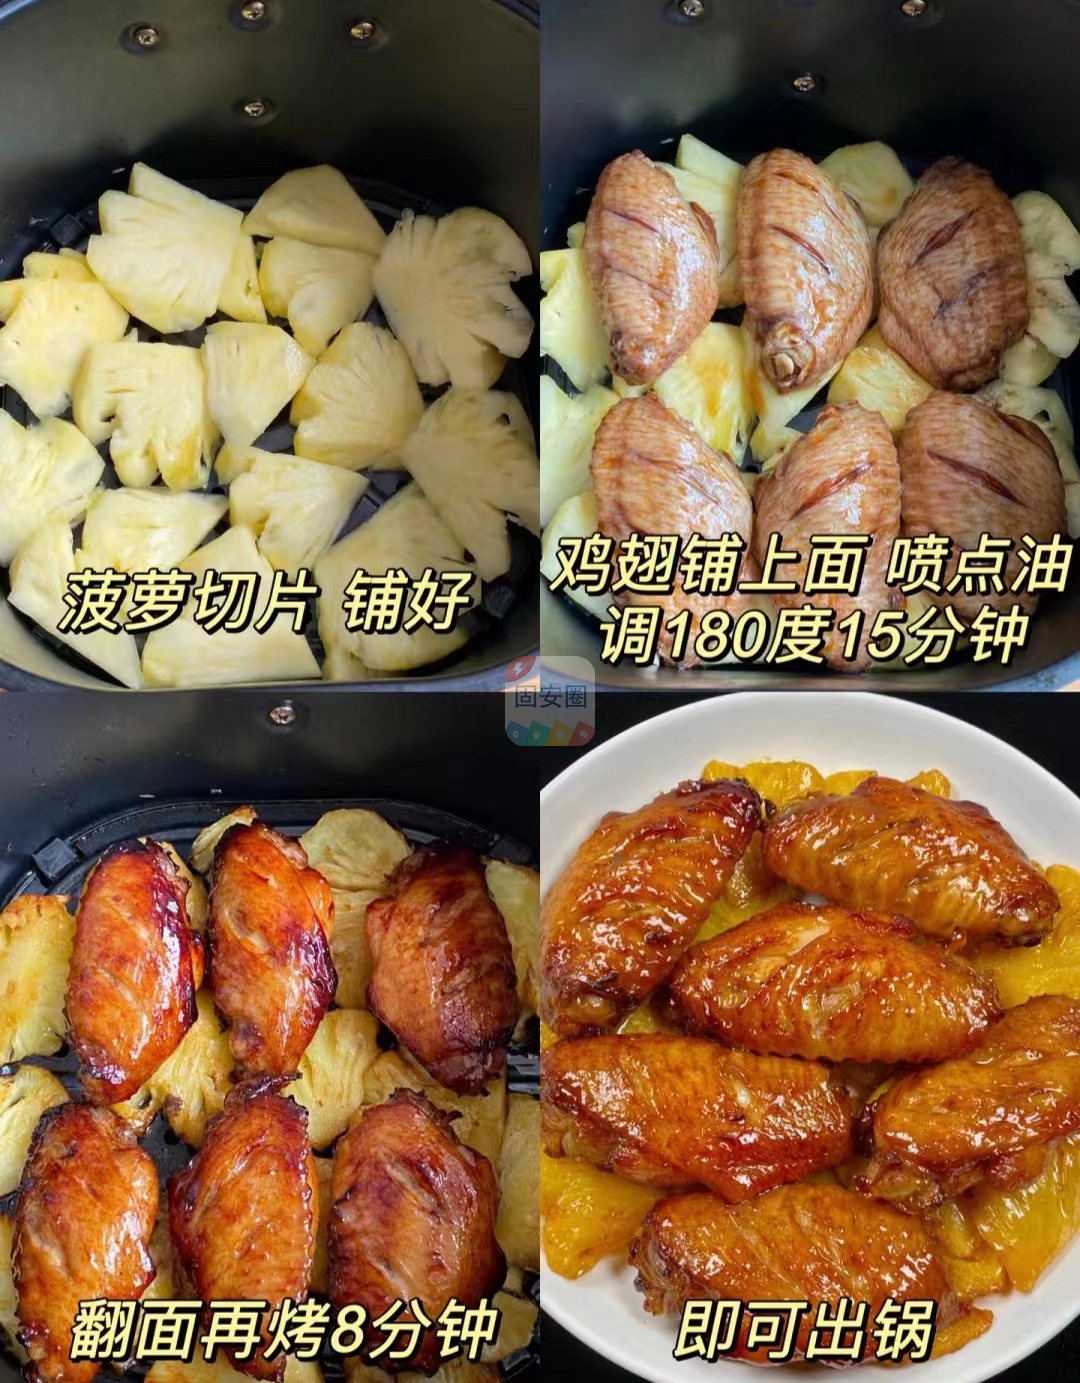 菠萝烤鸡翅，一出锅就惊艳了3507 作者:中国大厨 帖子ID:205946 